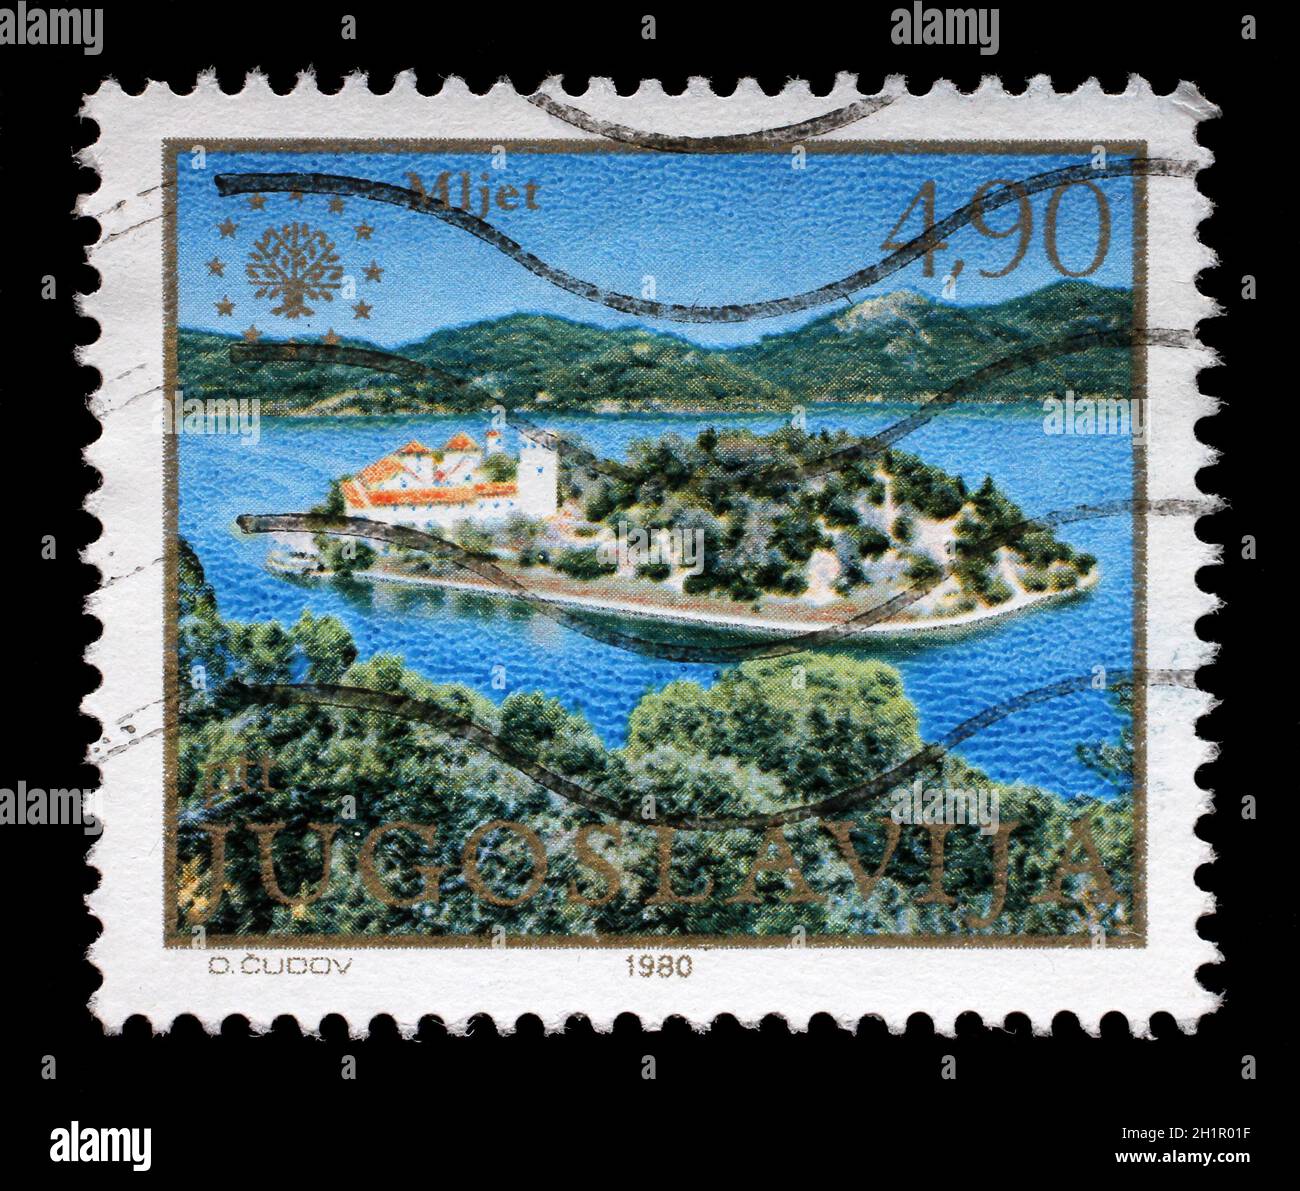 Timbro stampato in Jugoslavia mostra l'isola di Mljet, mare Adriatico, Croazia, circa 1980. Foto Stock